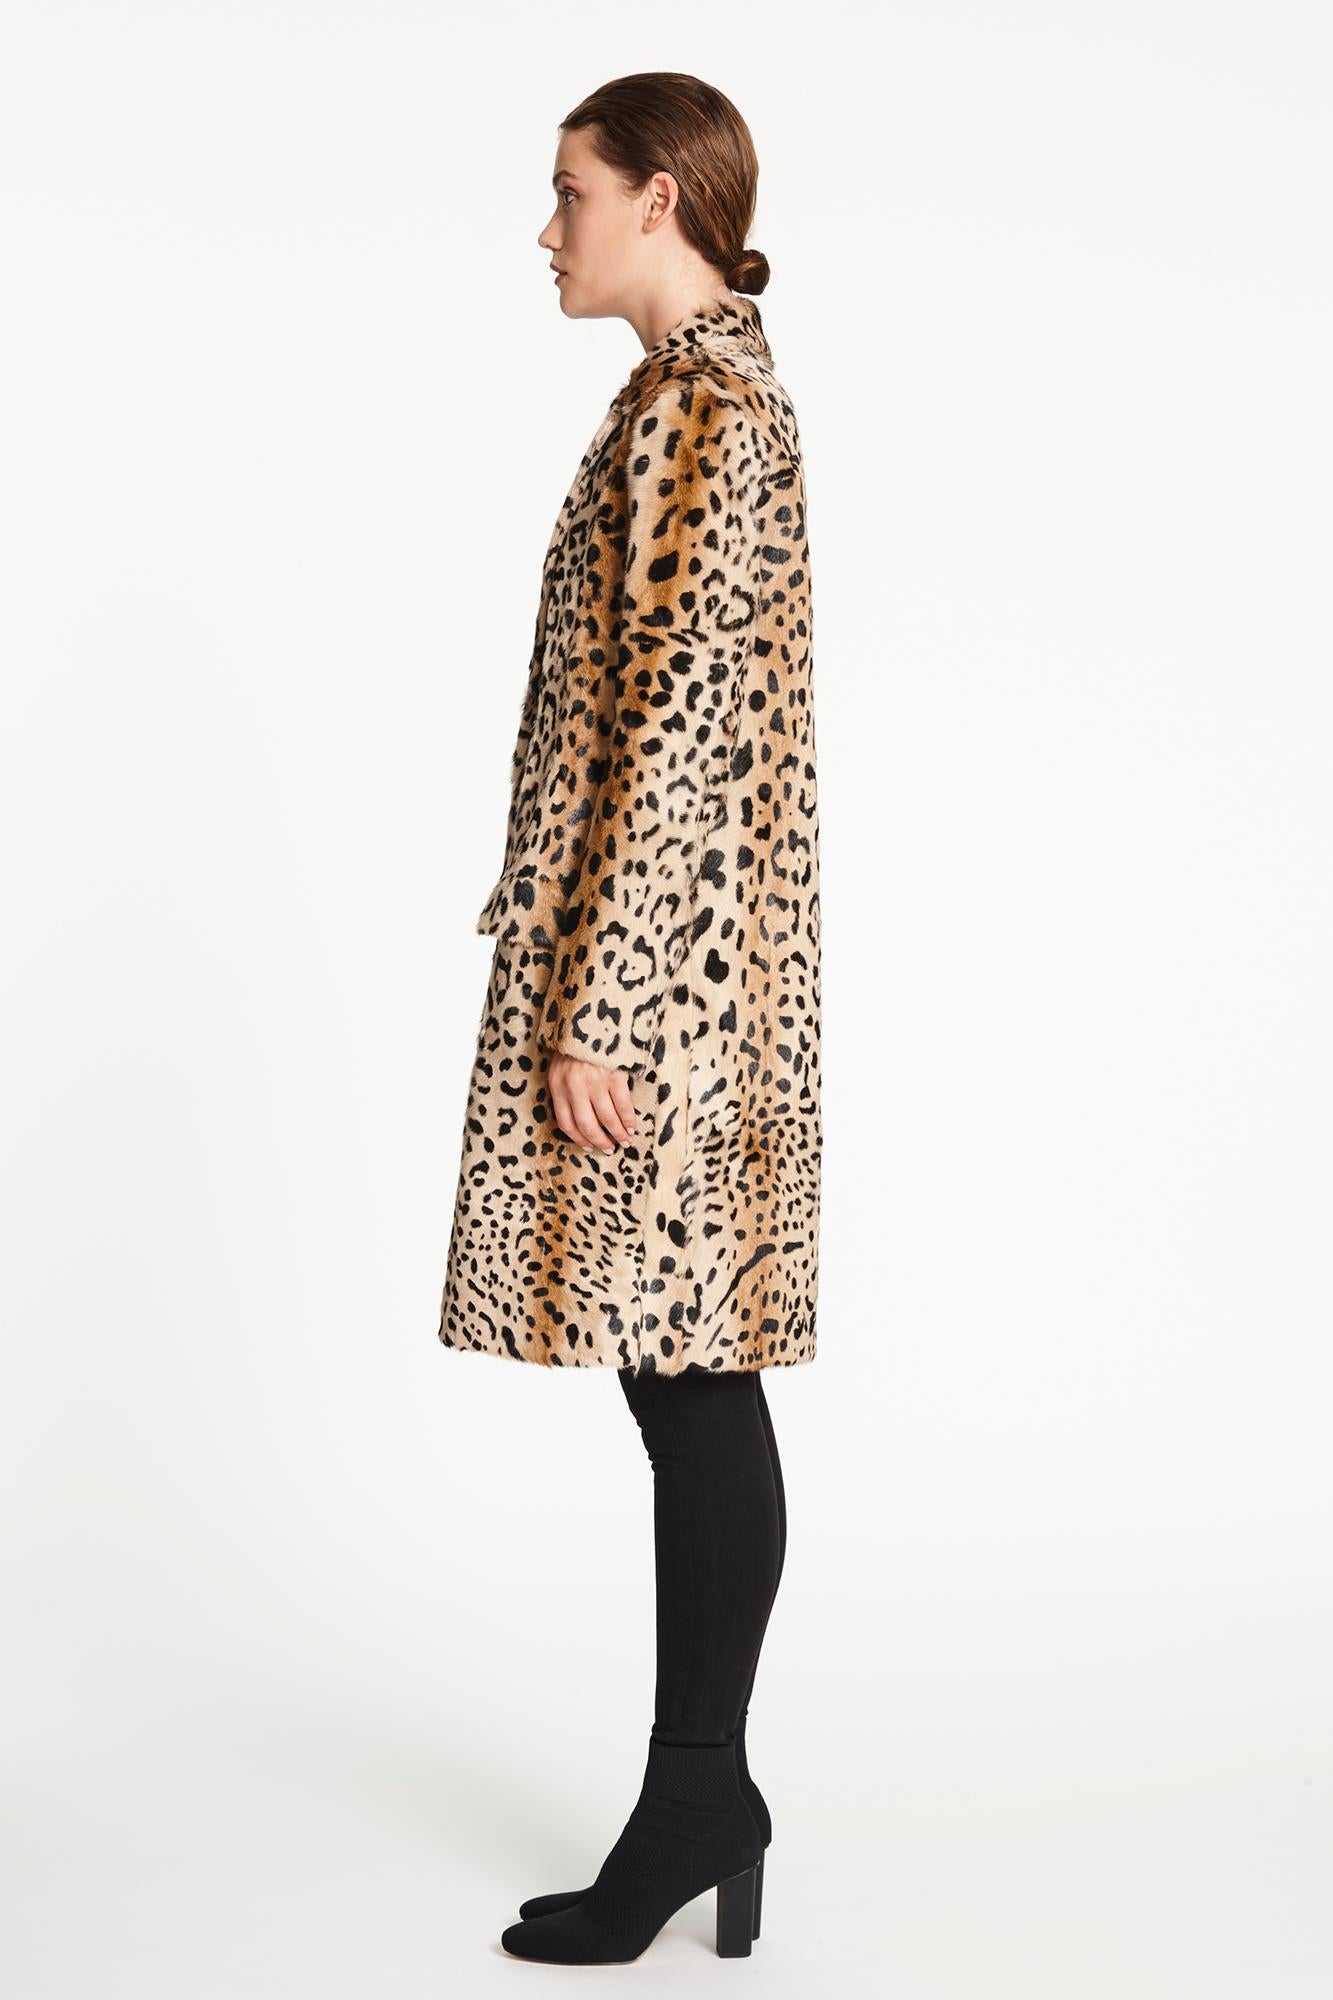 Verheyen London Leopard Print Coat in Natural Goat Hair Fur UK 10  2